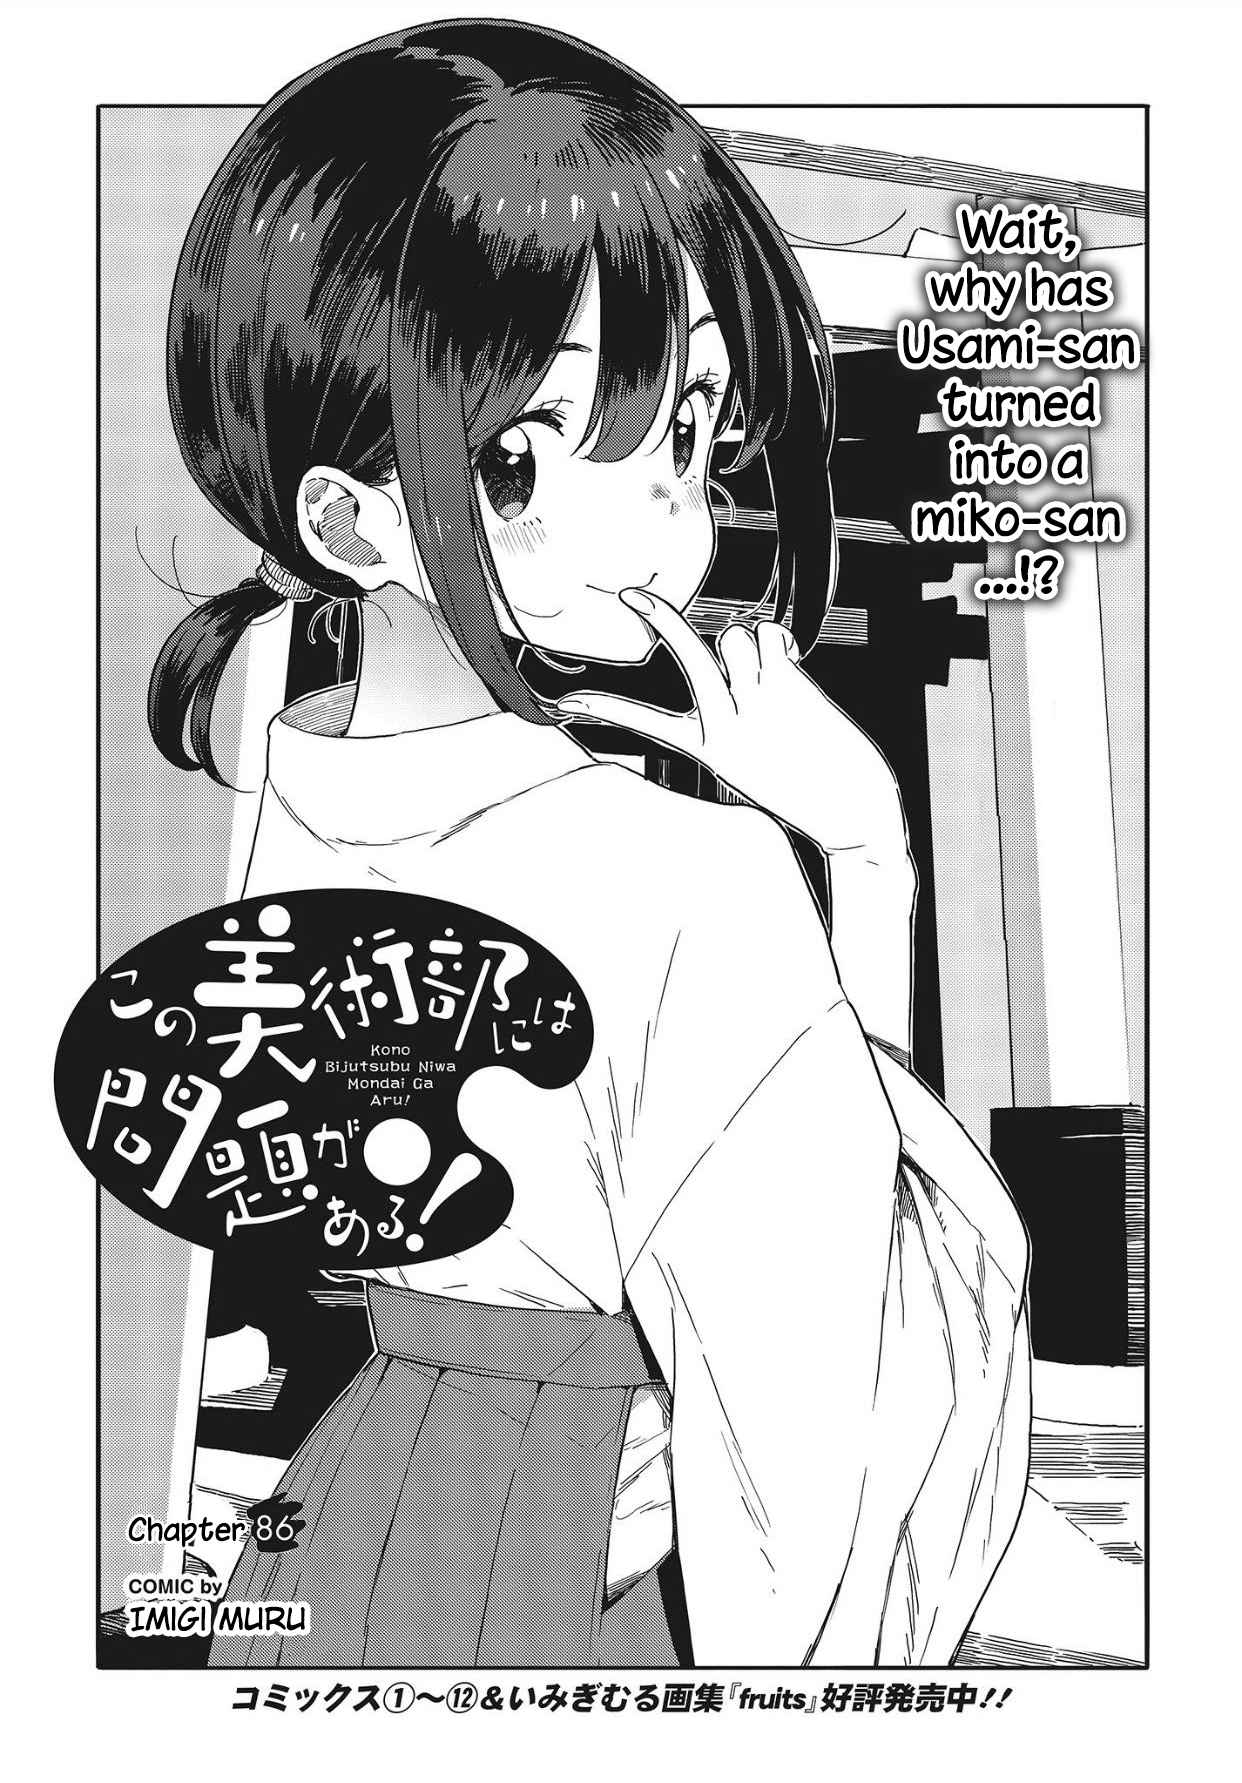 Kono Bijutsubu ni wa Mondai ga Aru! Vol. 13 Ch. 86